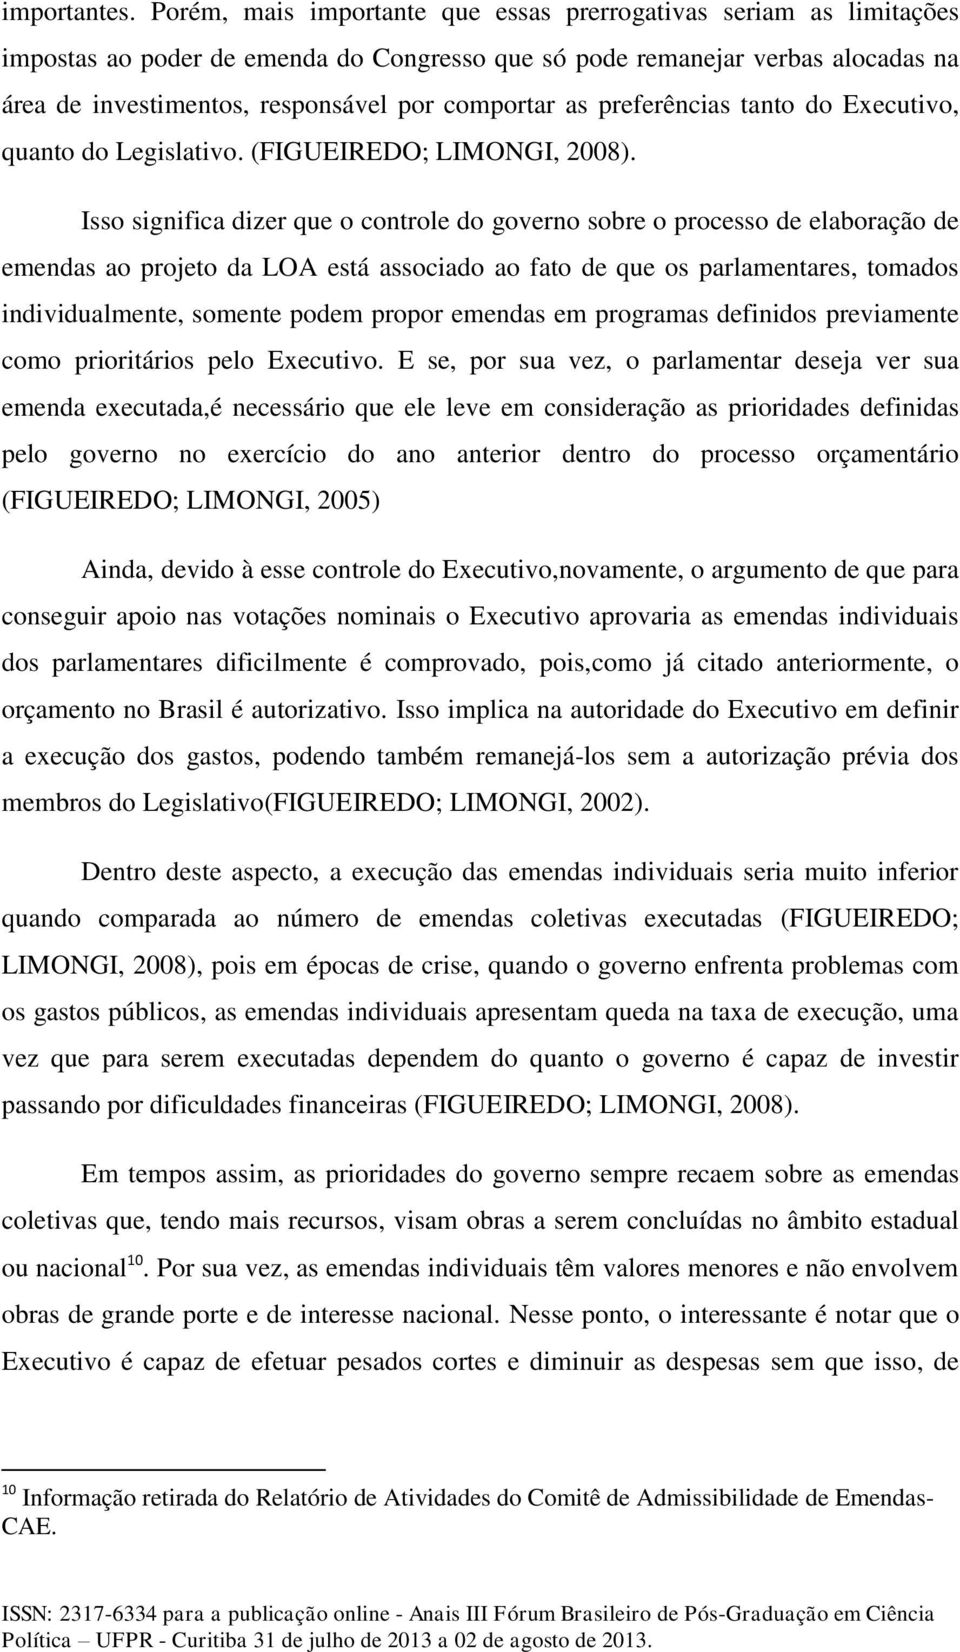 as preferências tanto do Executivo, quanto do Legislativo. (FIGUEIREDO; LIMONGI, 2008).